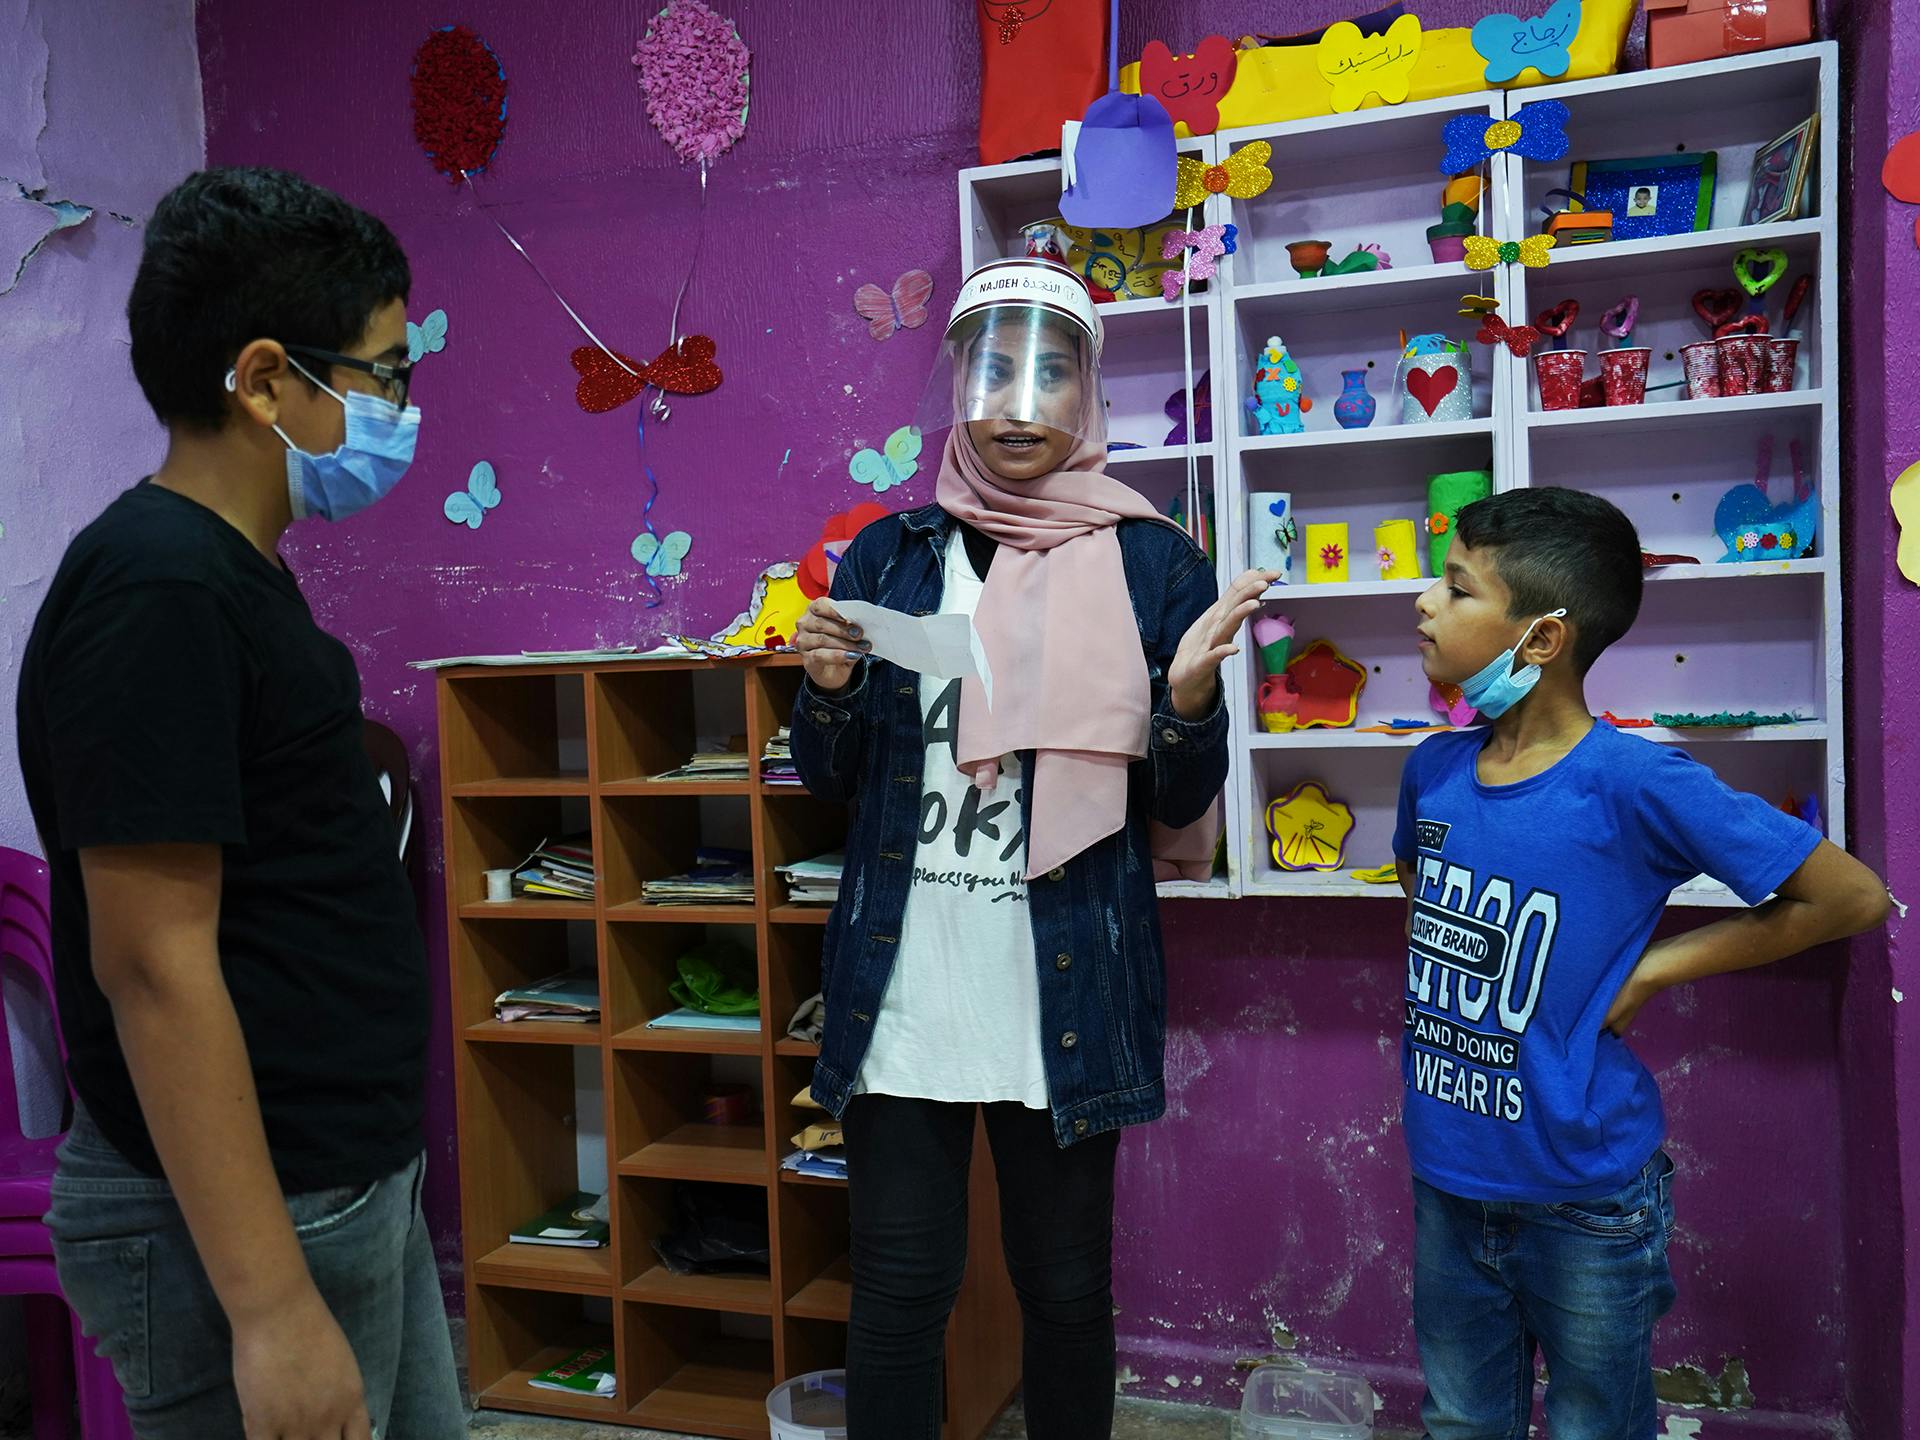 En lärare och två barn stor i ett rum med rosamålade väggar och bokhyllor med böcker.